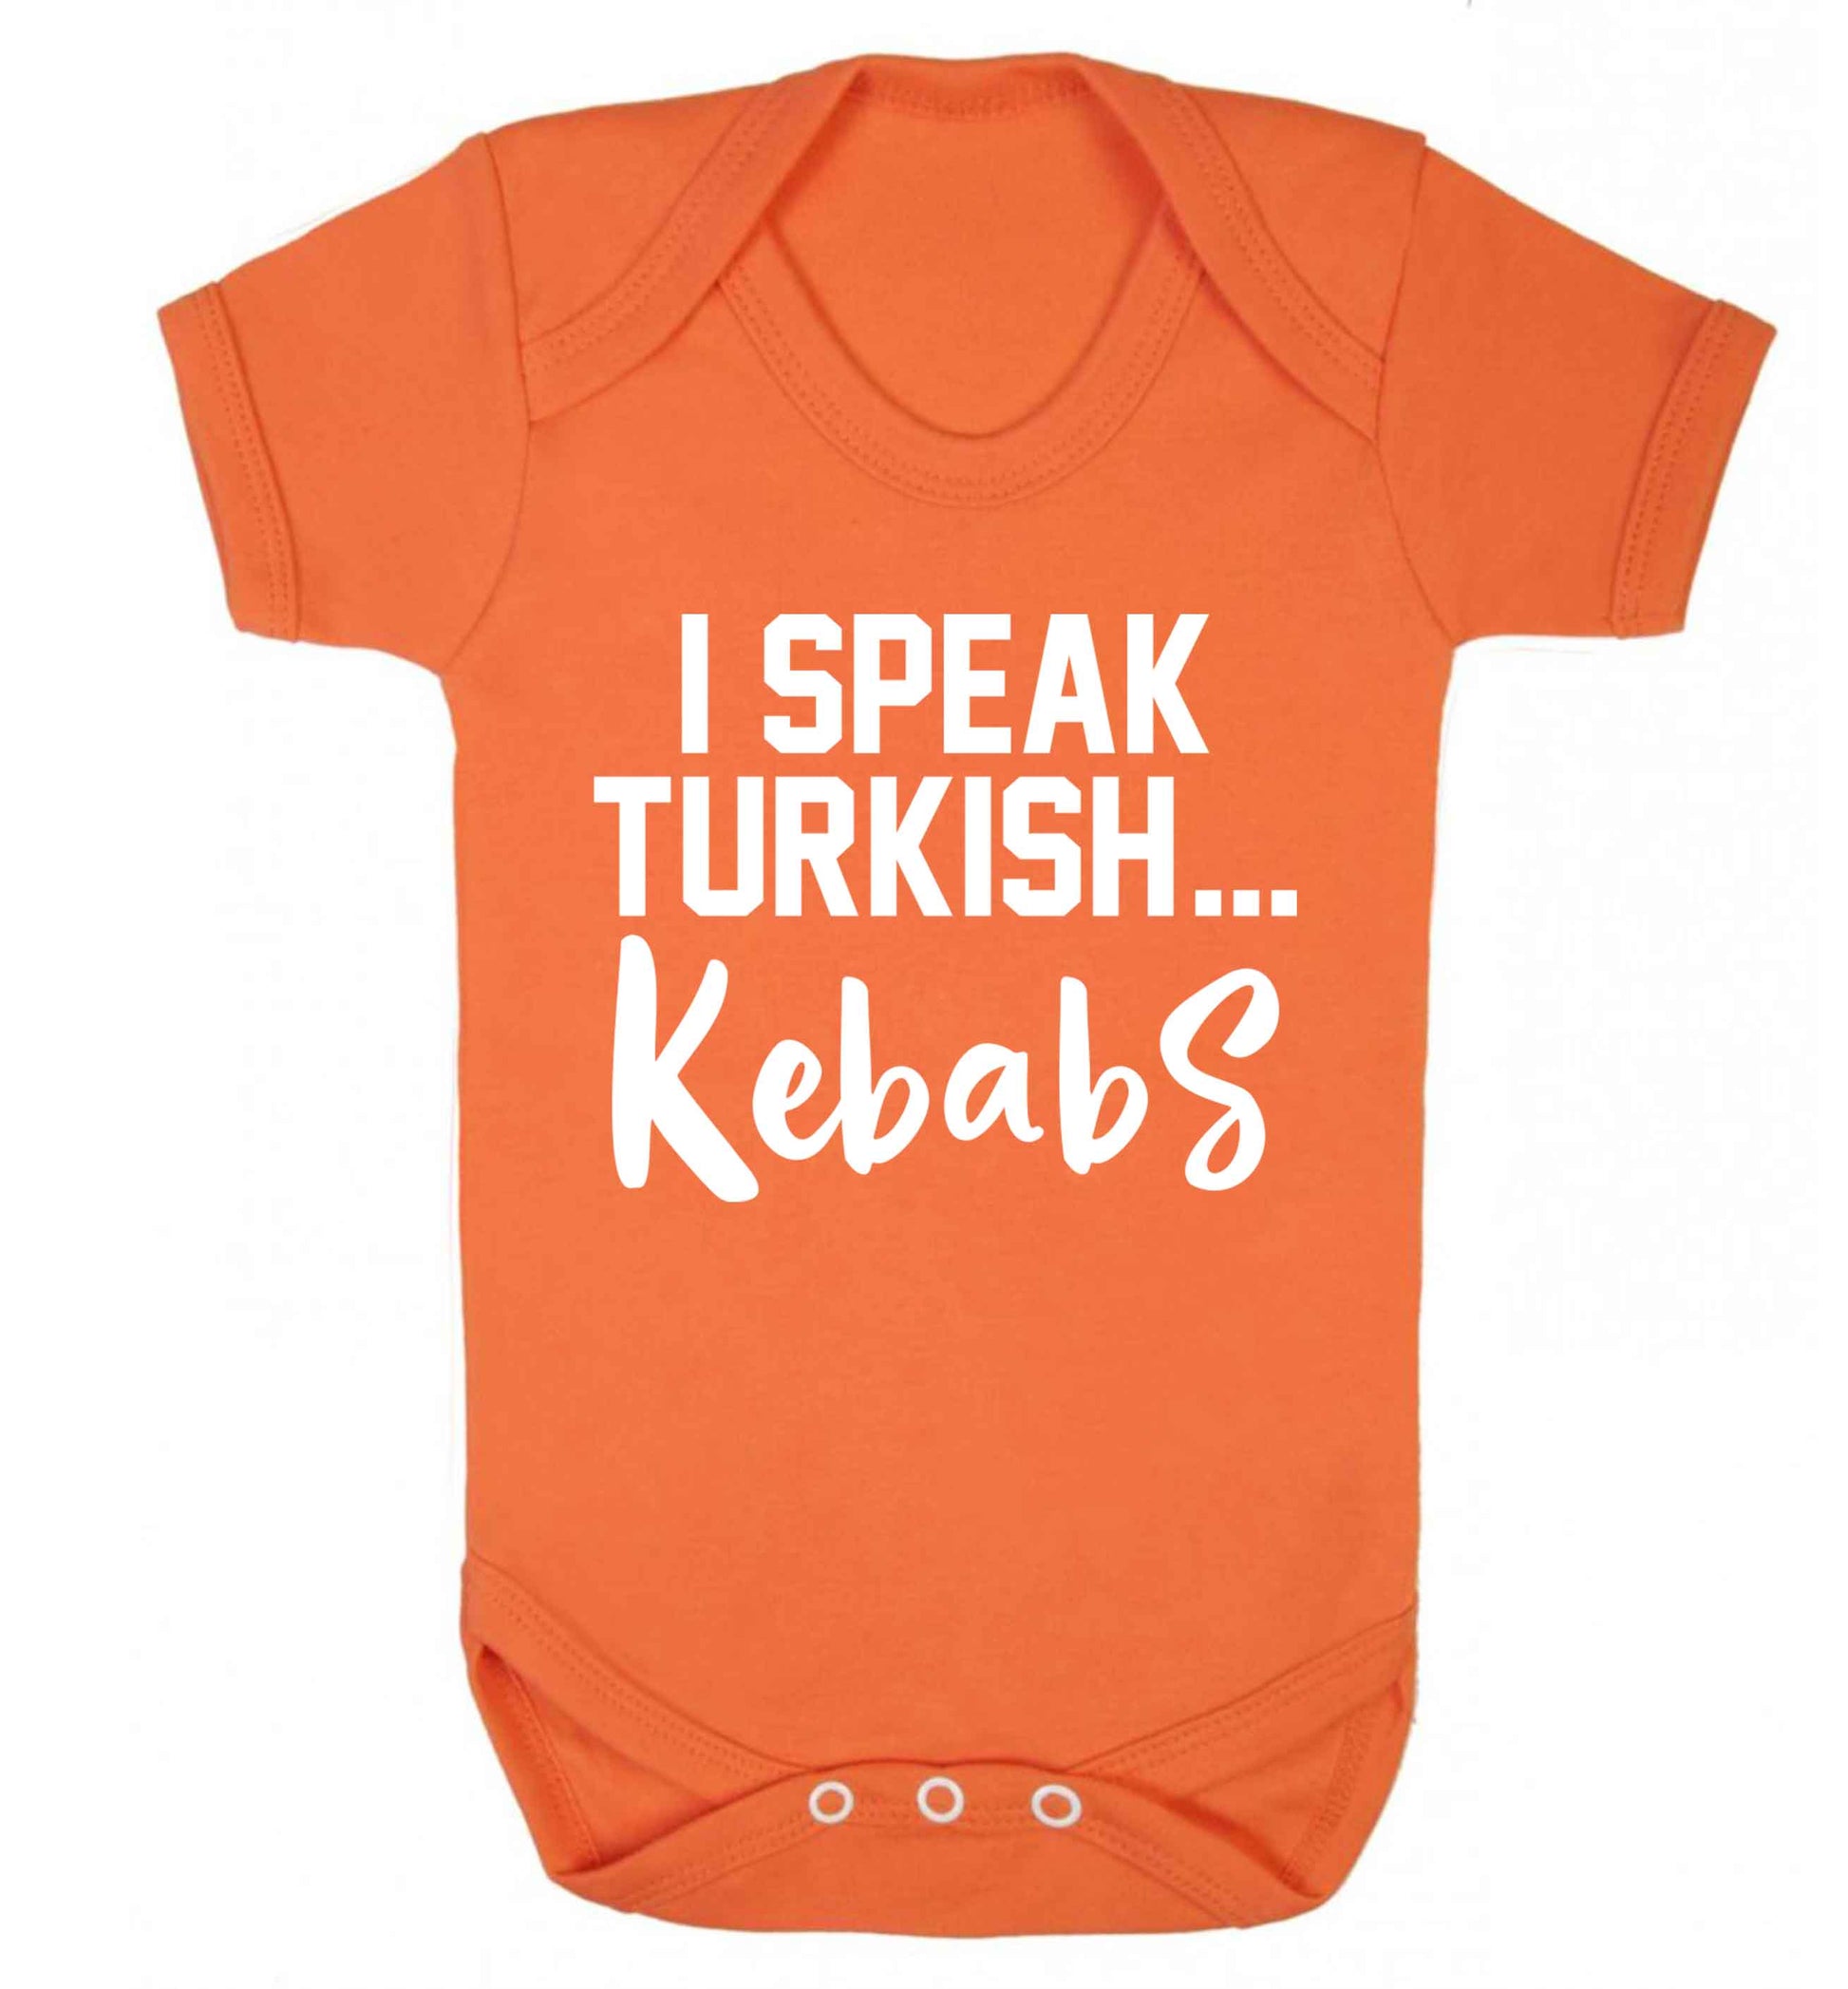 I speak Turkish...kebabs Baby Vest orange 18-24 months